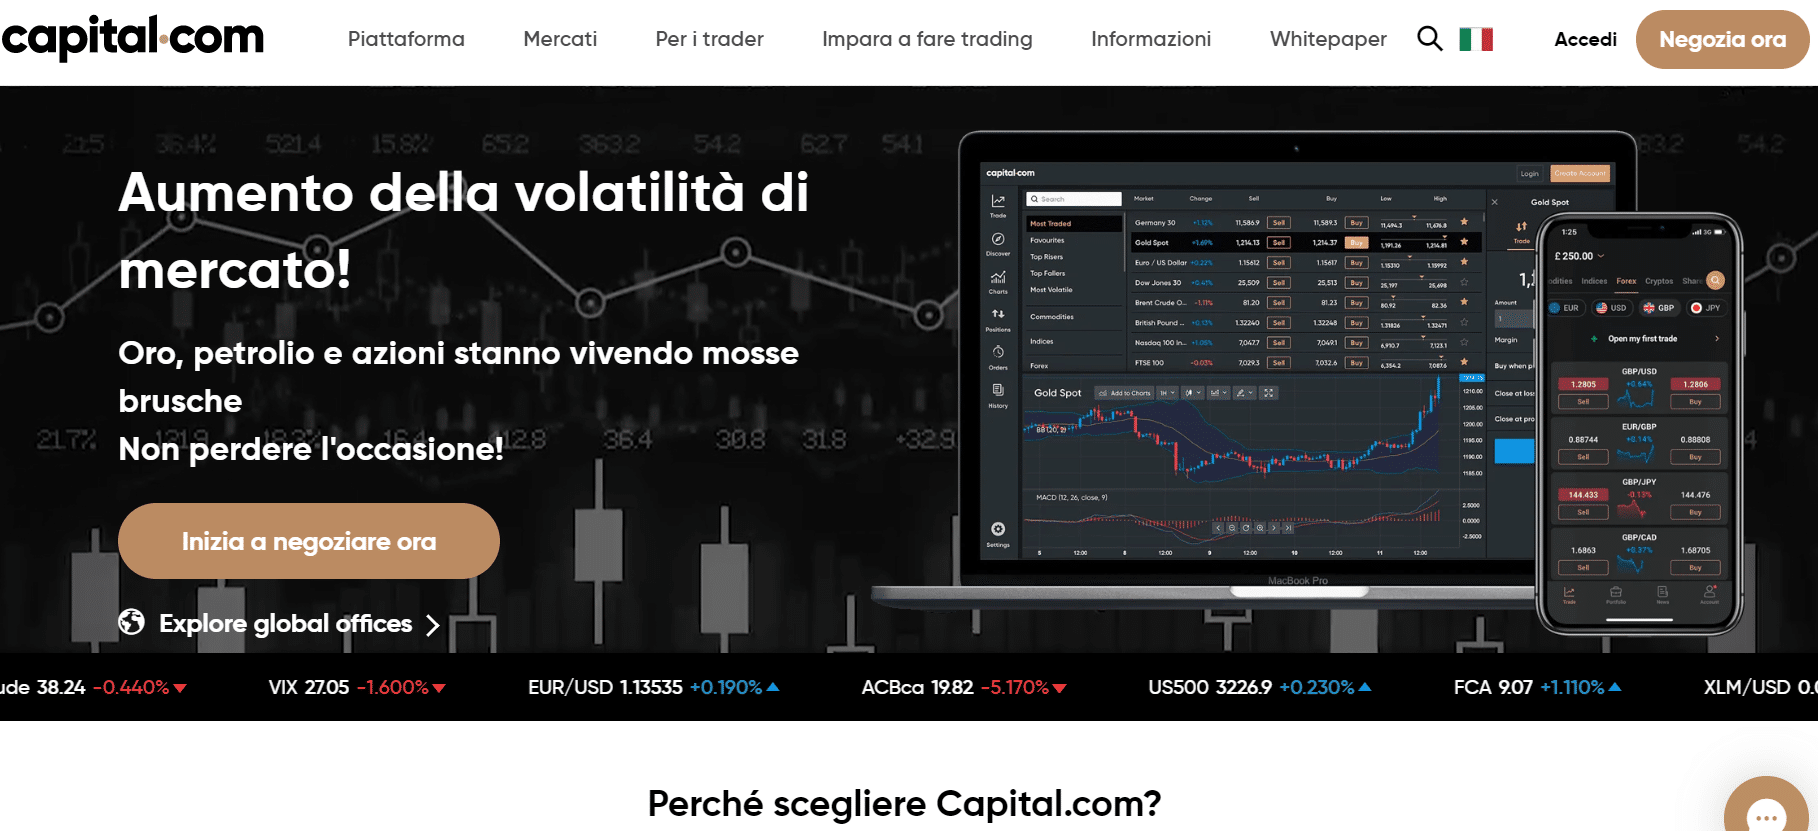 Migliori broker Trading Criptovalute Guida · ristoranteimperatore.it